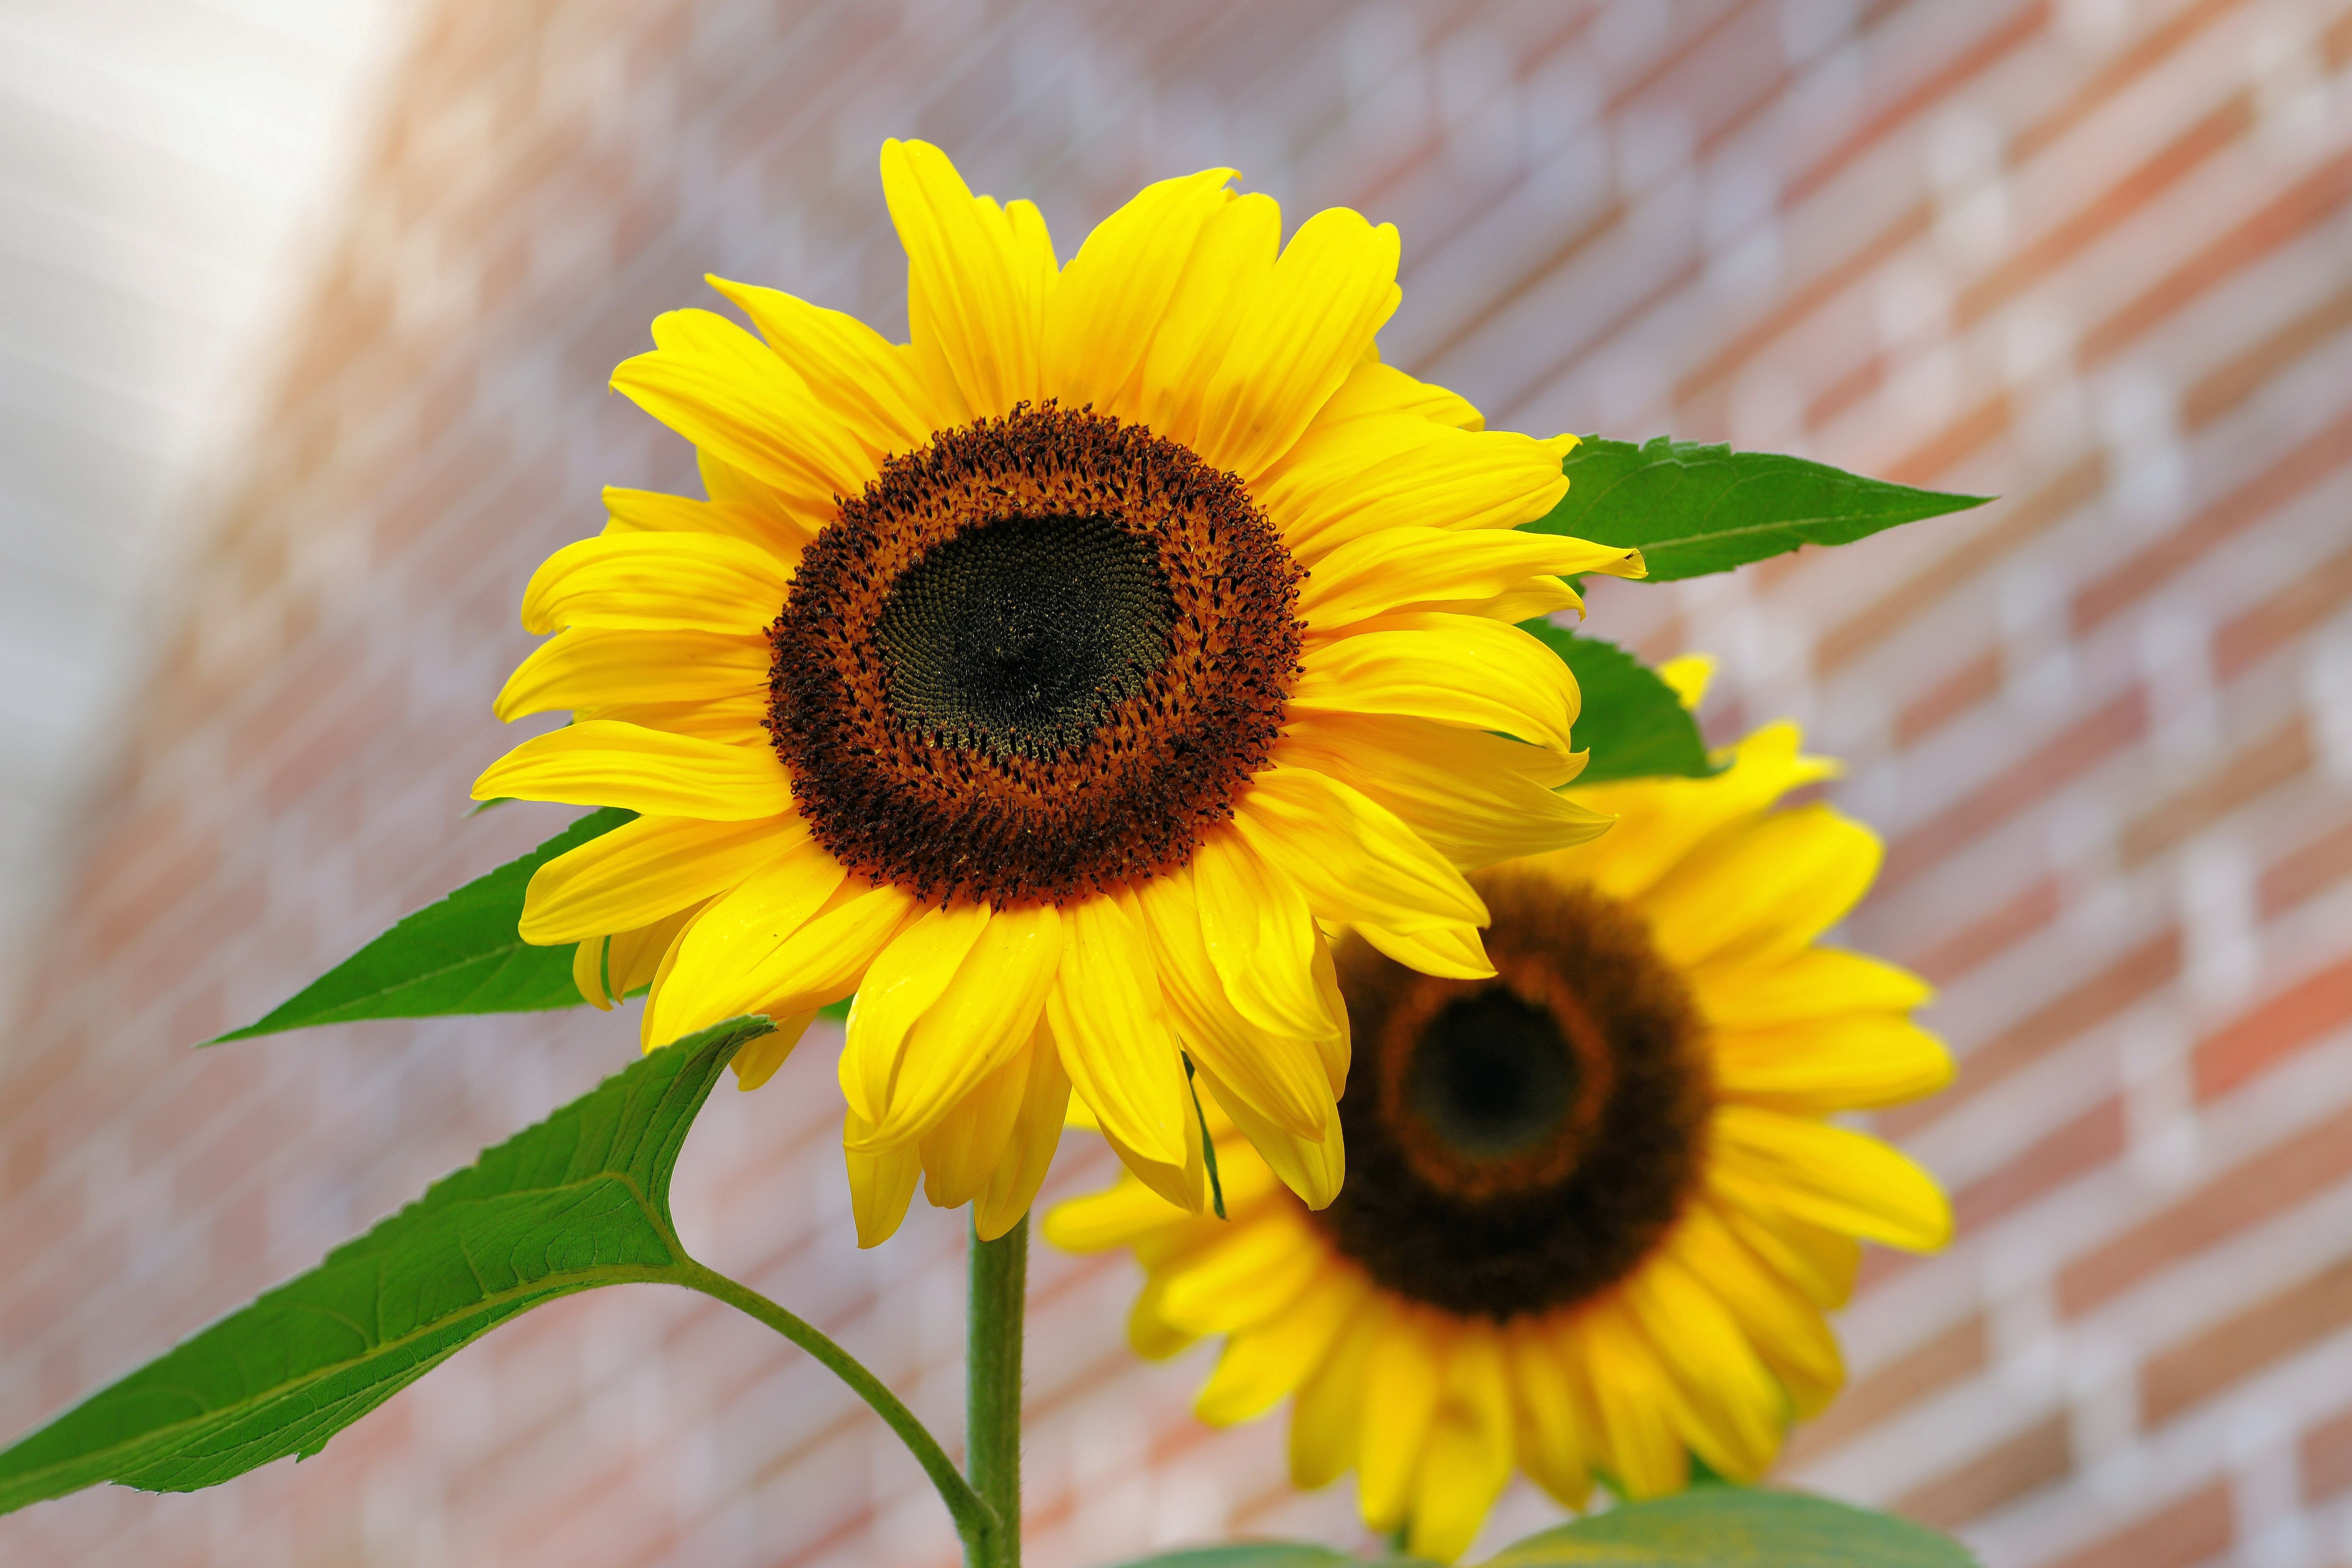 Hướng dương (sunflower): Hãy chiêm ngưỡng bức tranh tuyệt đẹp về những cây hướng dương với sắc vàng rực rỡ, tạo nên một khung cảnh sống động và lạ mắt. Tất cả đều được thể hiện rõ nét và sắc nét trong hình ảnh, khiến bạn như sống trong một cánh đồng hoa đầy màu sắc.